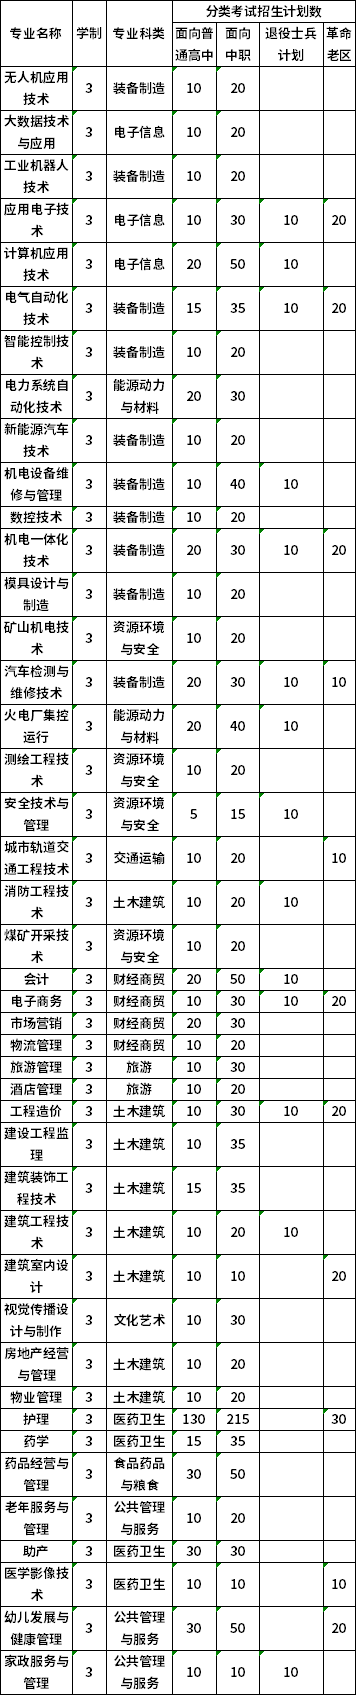 淮南职业技术学院2020年分类考试招生计划